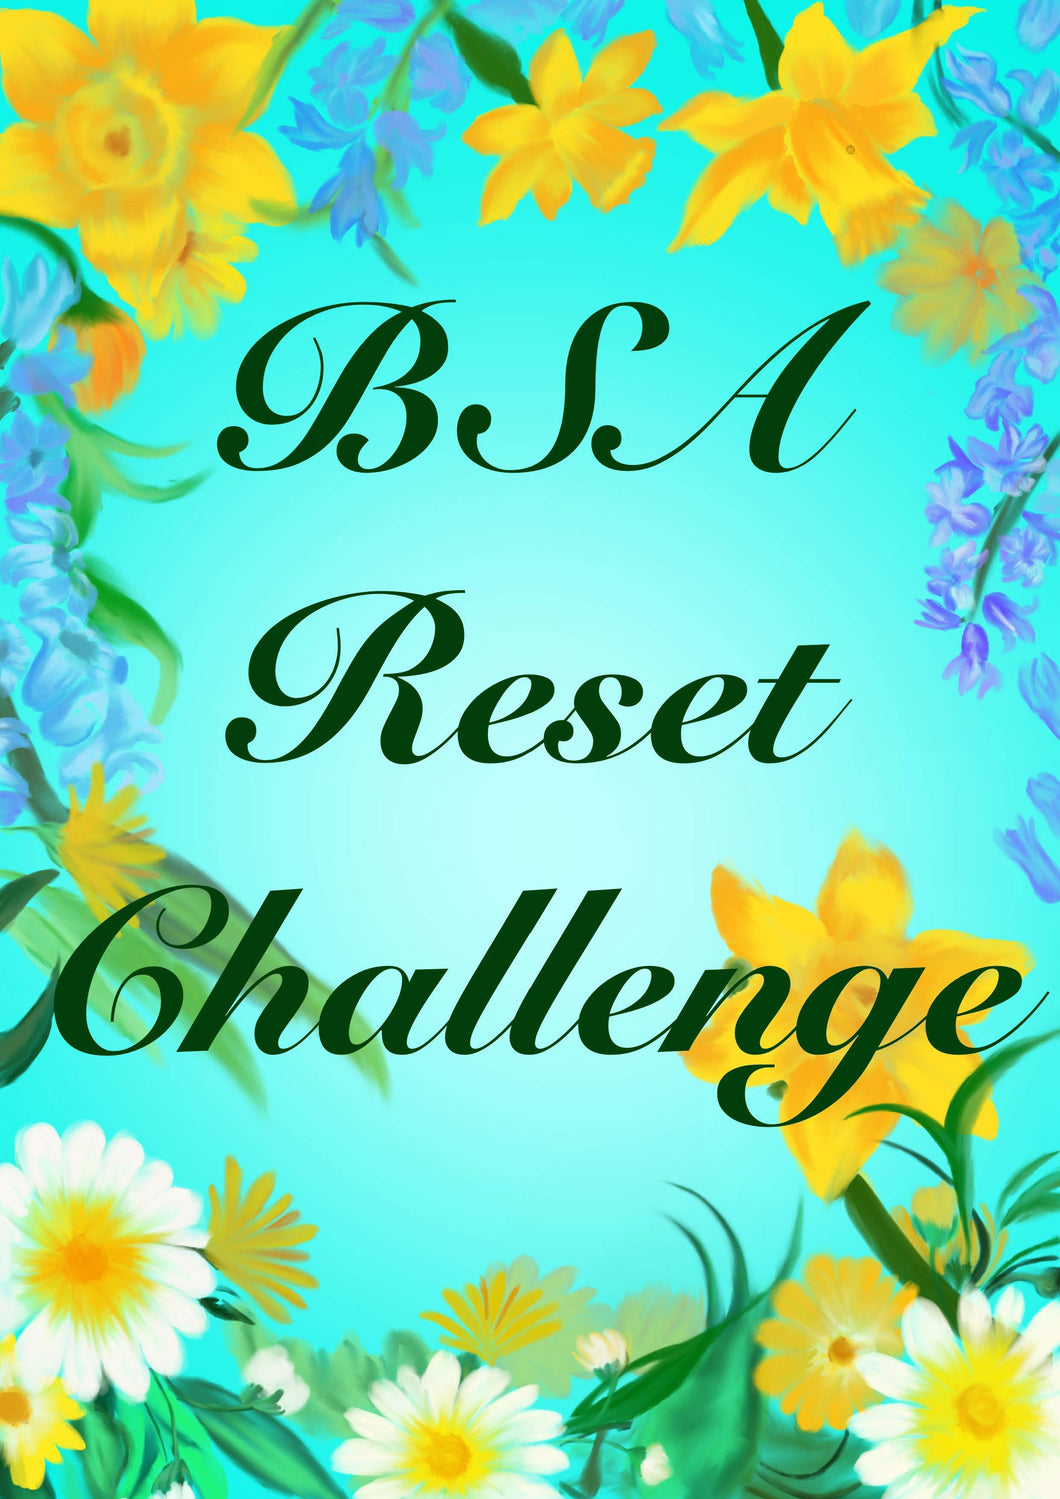 Bsa Reset Challenge - Resources